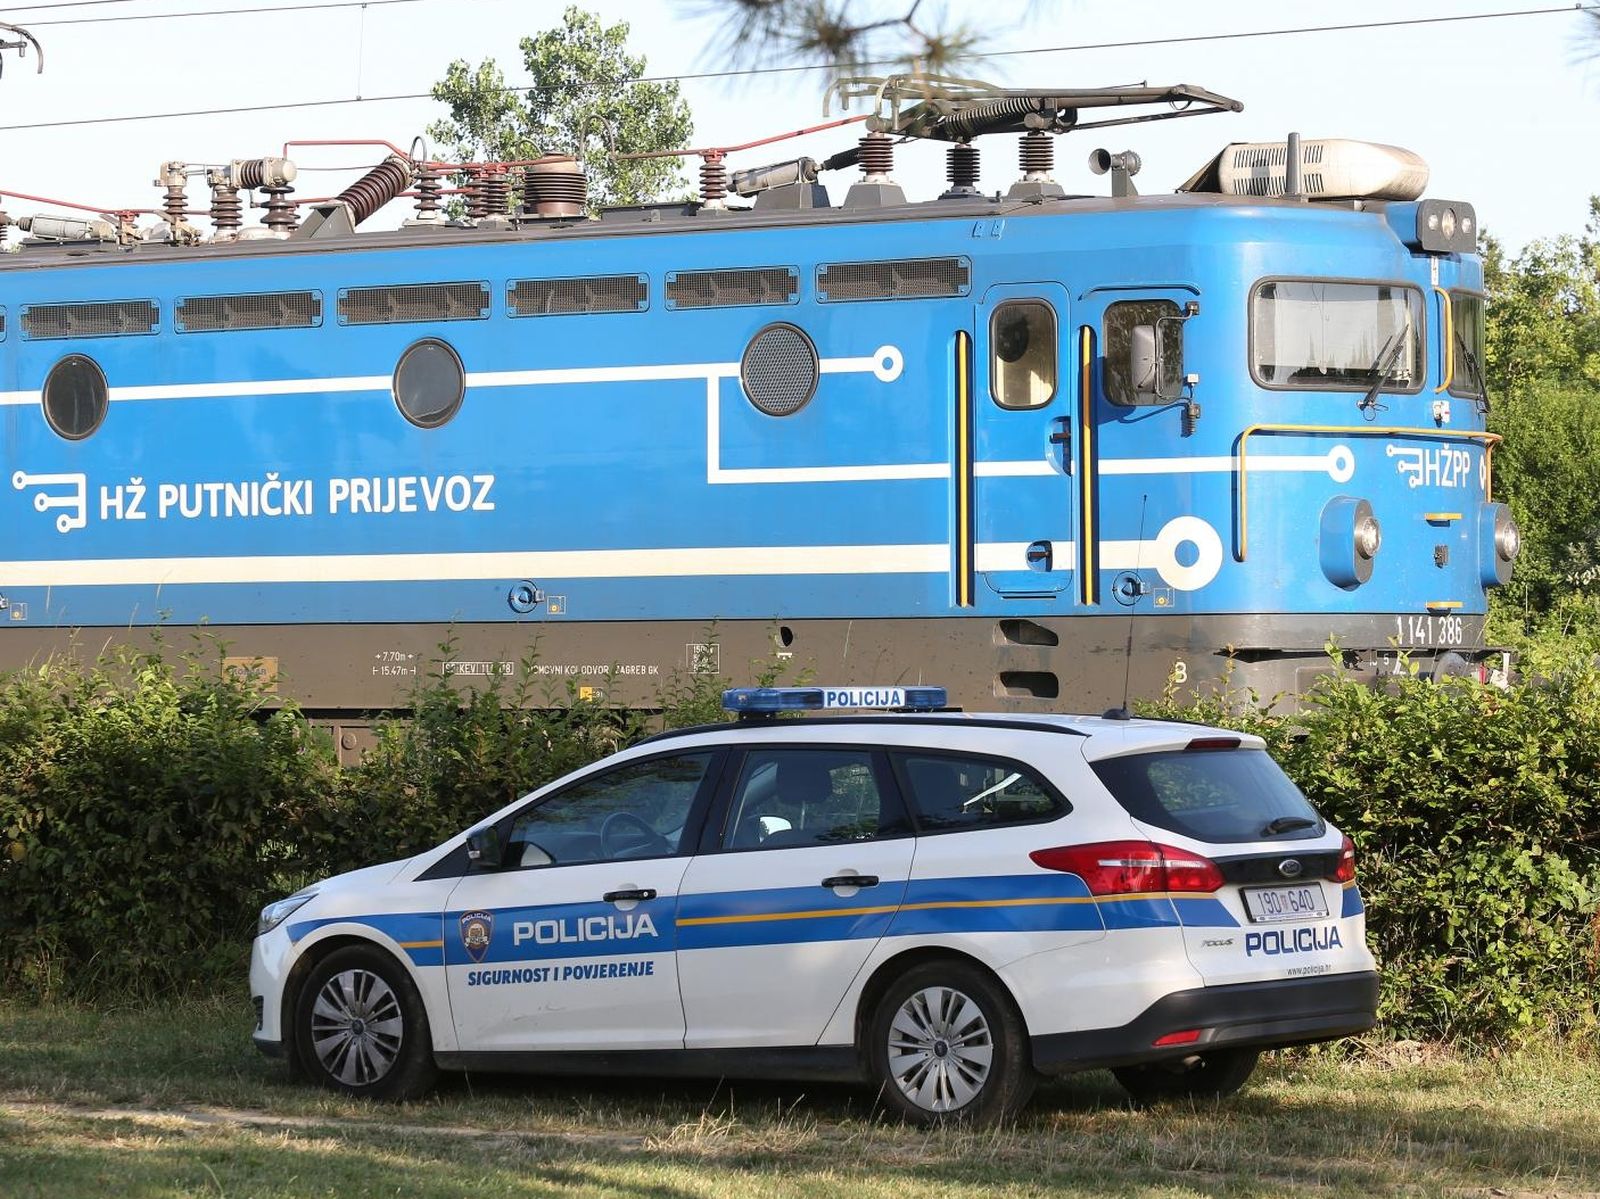 30.06.2019., Zagreb - Na pruznom prijelazu Trnava, vlak usmrtio biciklista. 

Photo: Marko Prpic/PIXSELL